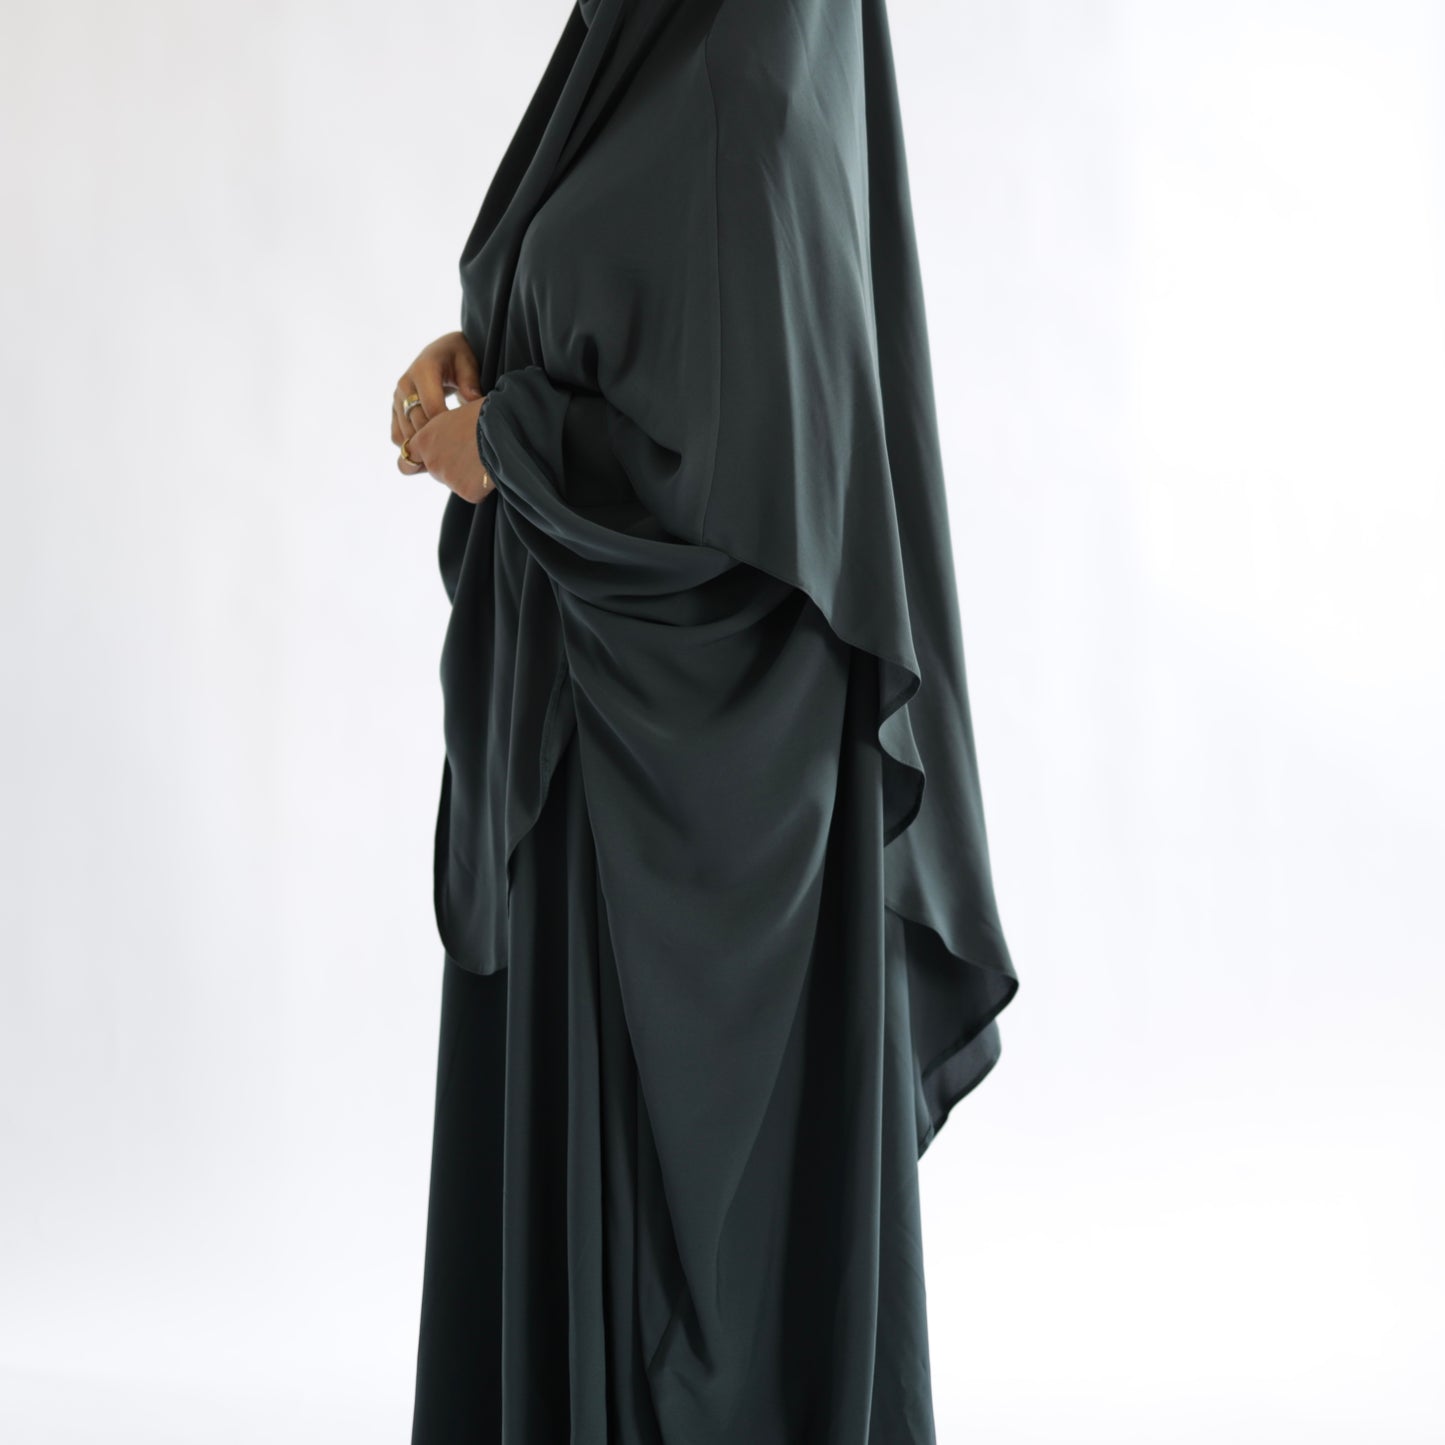 Teal Grey Khimar with Niqab Ties